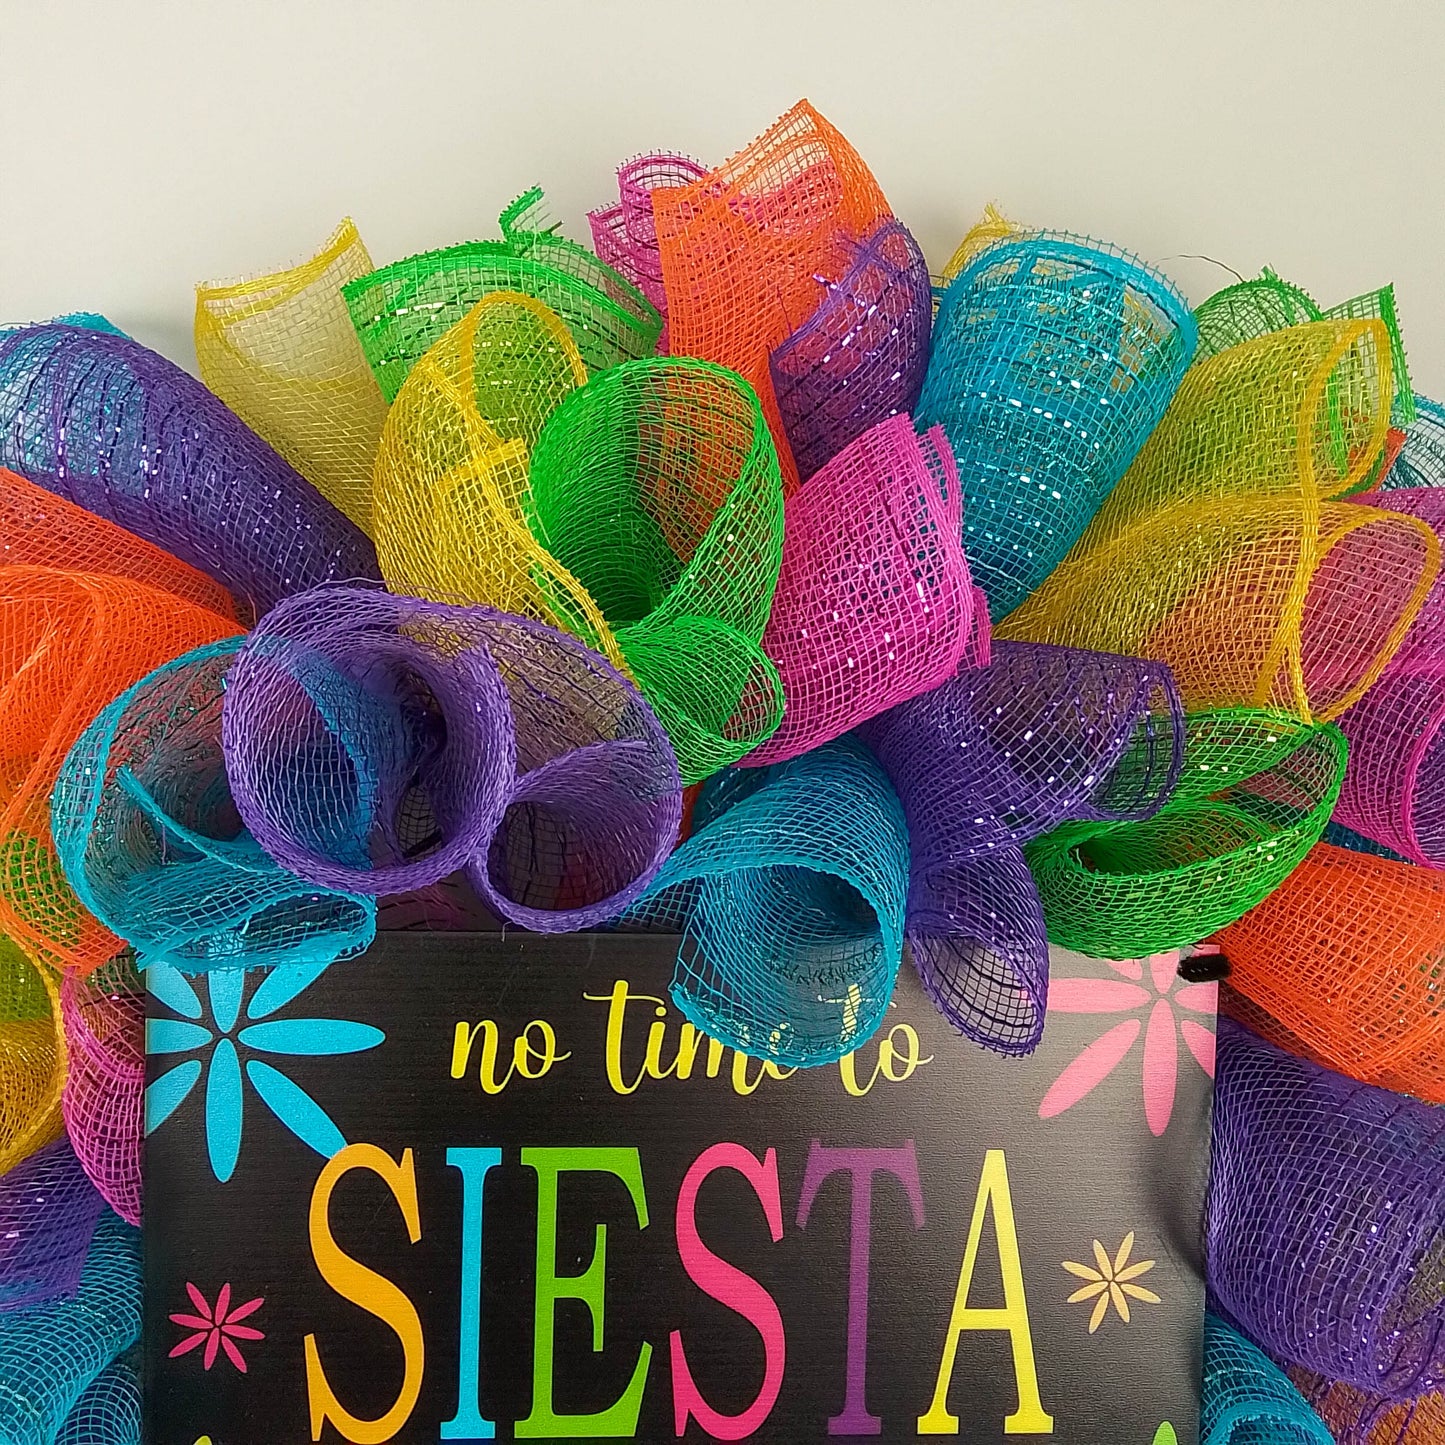 Bright Fiesta Party Wreath - Colorful Birthday Decor - Versatile Indoor/Outdoor Cinco de Mayo Decoration